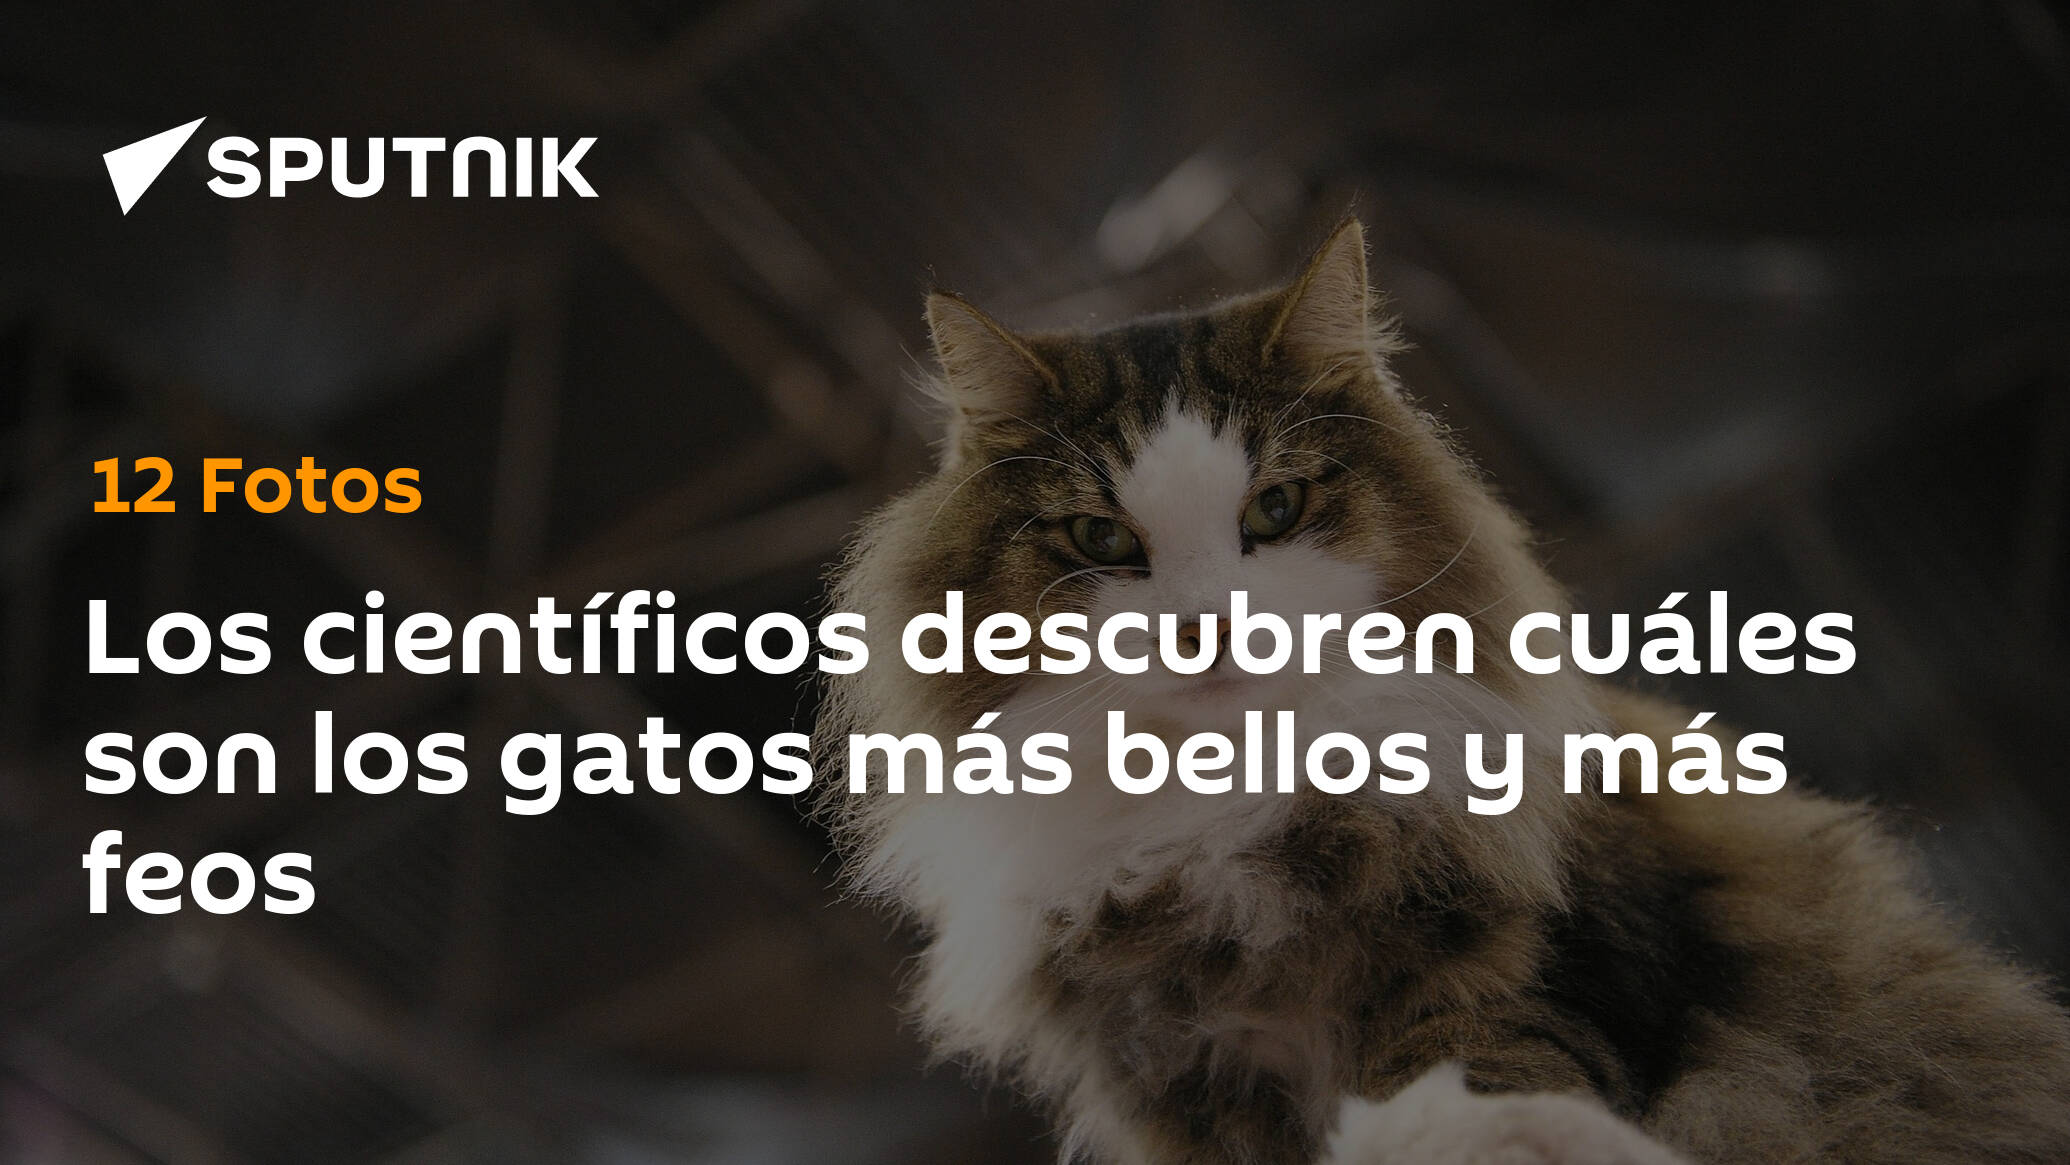 Los científicos descubren cuáles son los gatos más bellos y más feos -  , Sputnik Mundo